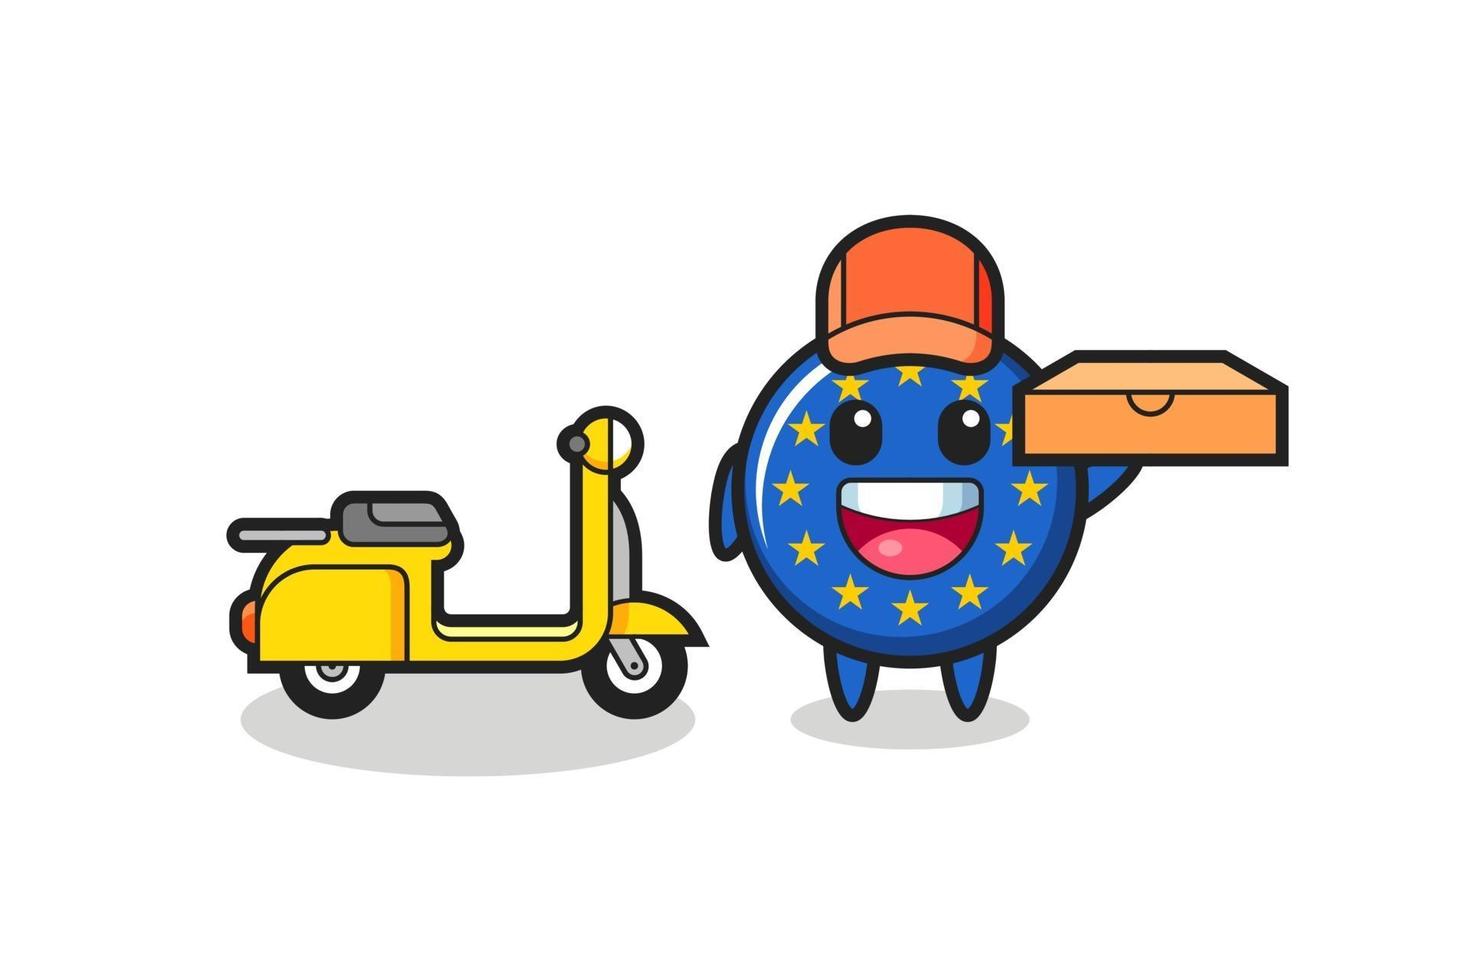 Ilustración de personaje de la insignia de la bandera de Europa como repartidor de pizzas vector